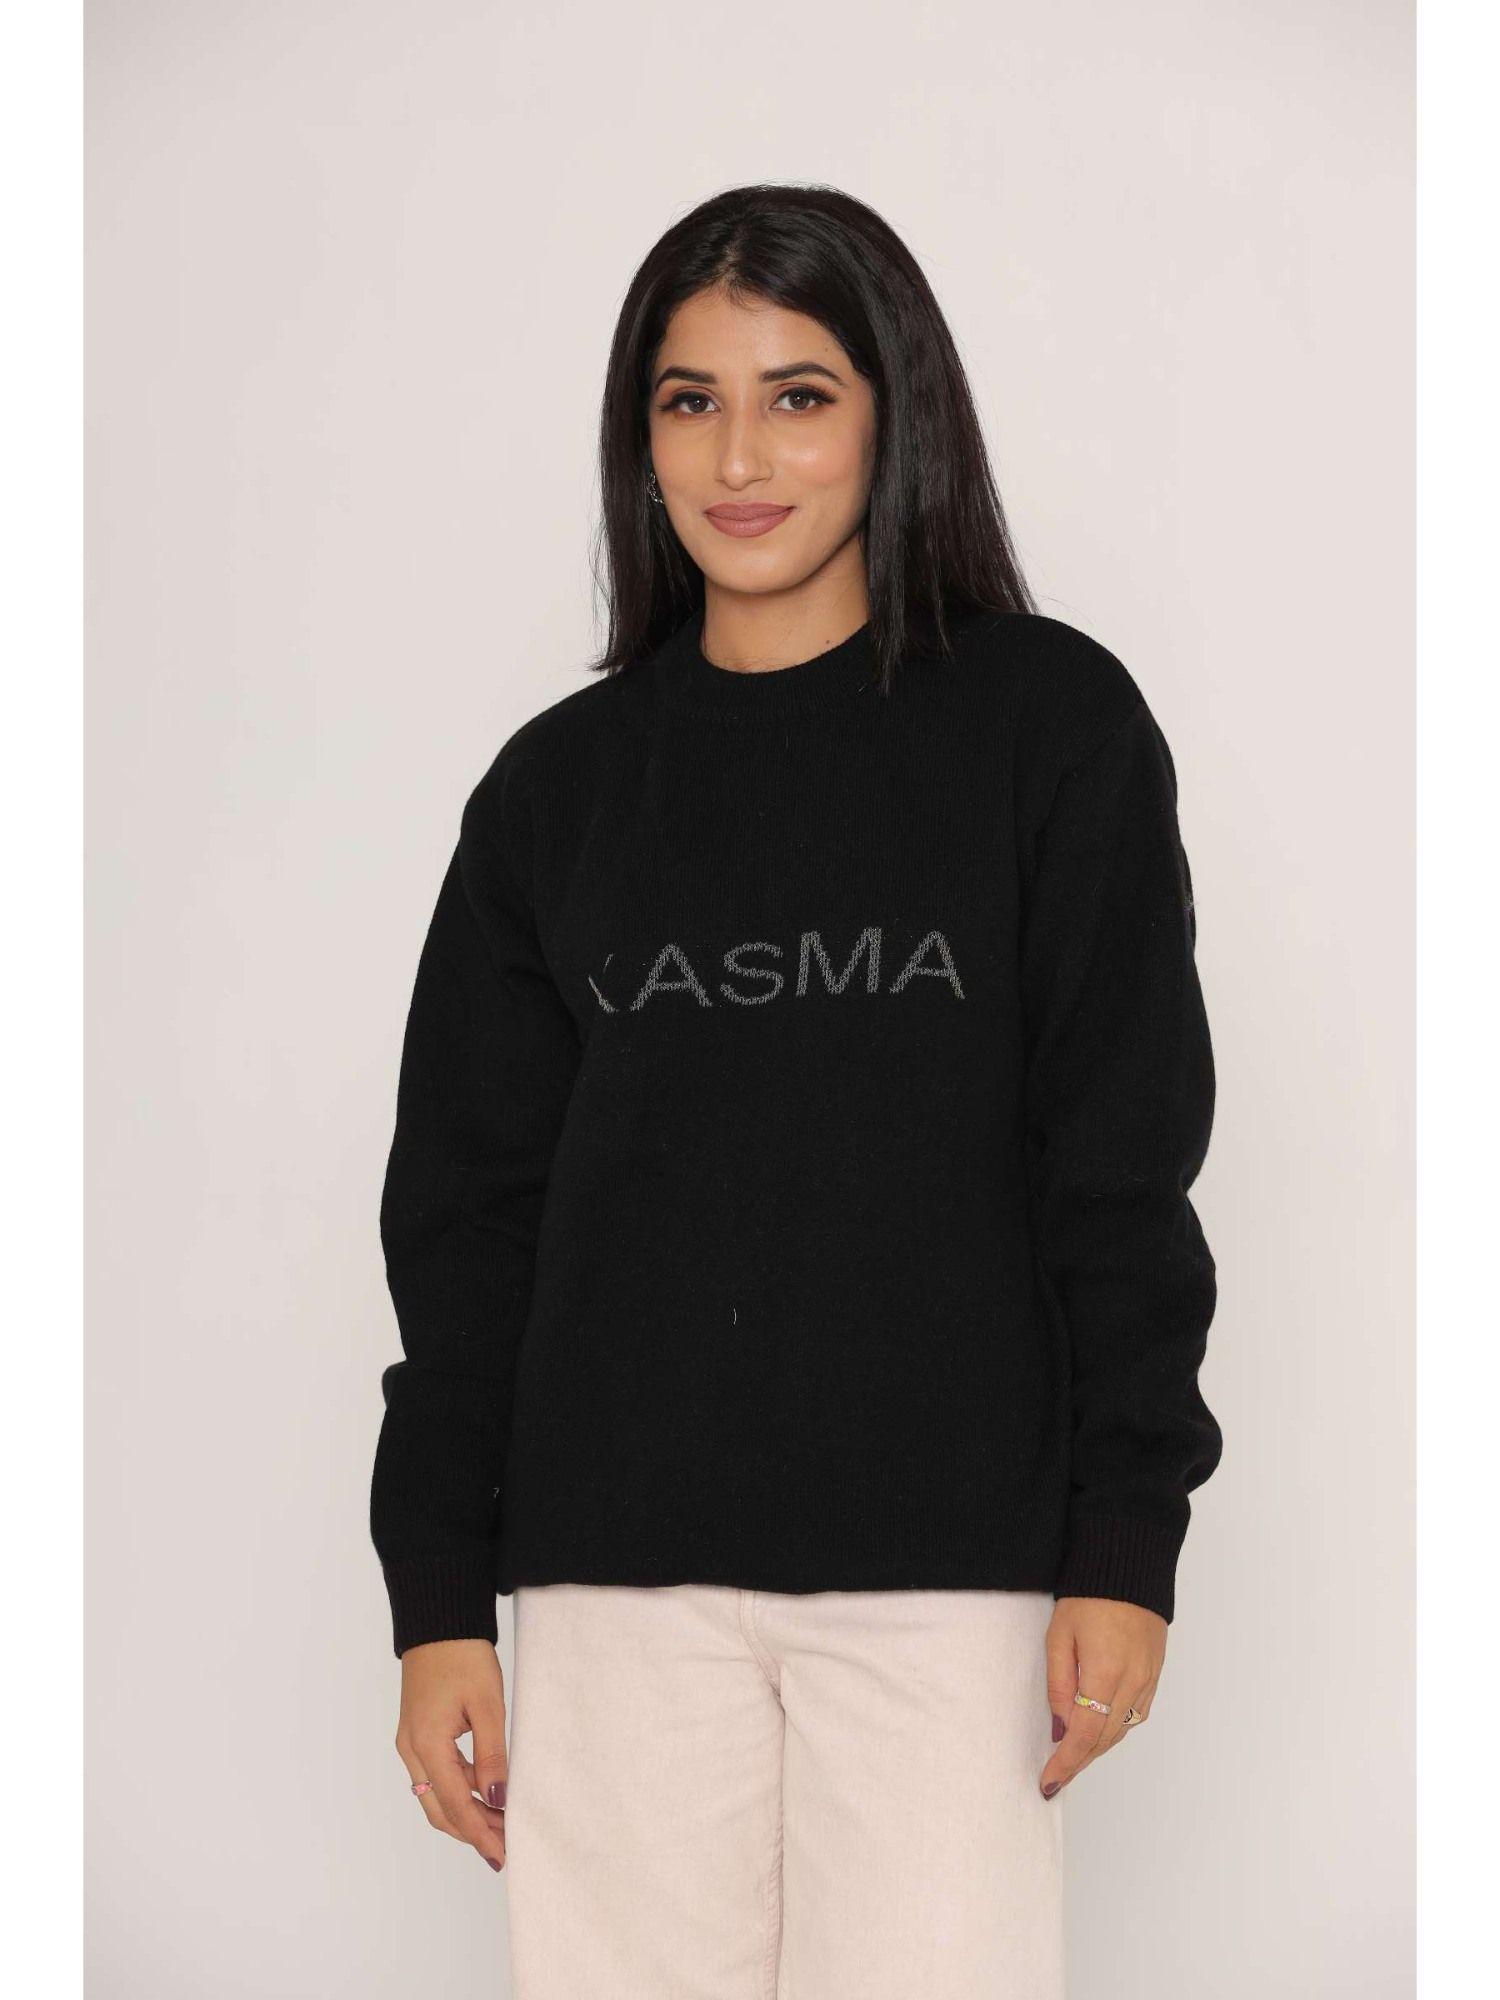 stylish-oversized-drop-shoulders-black-woollen-sweaters-for-women